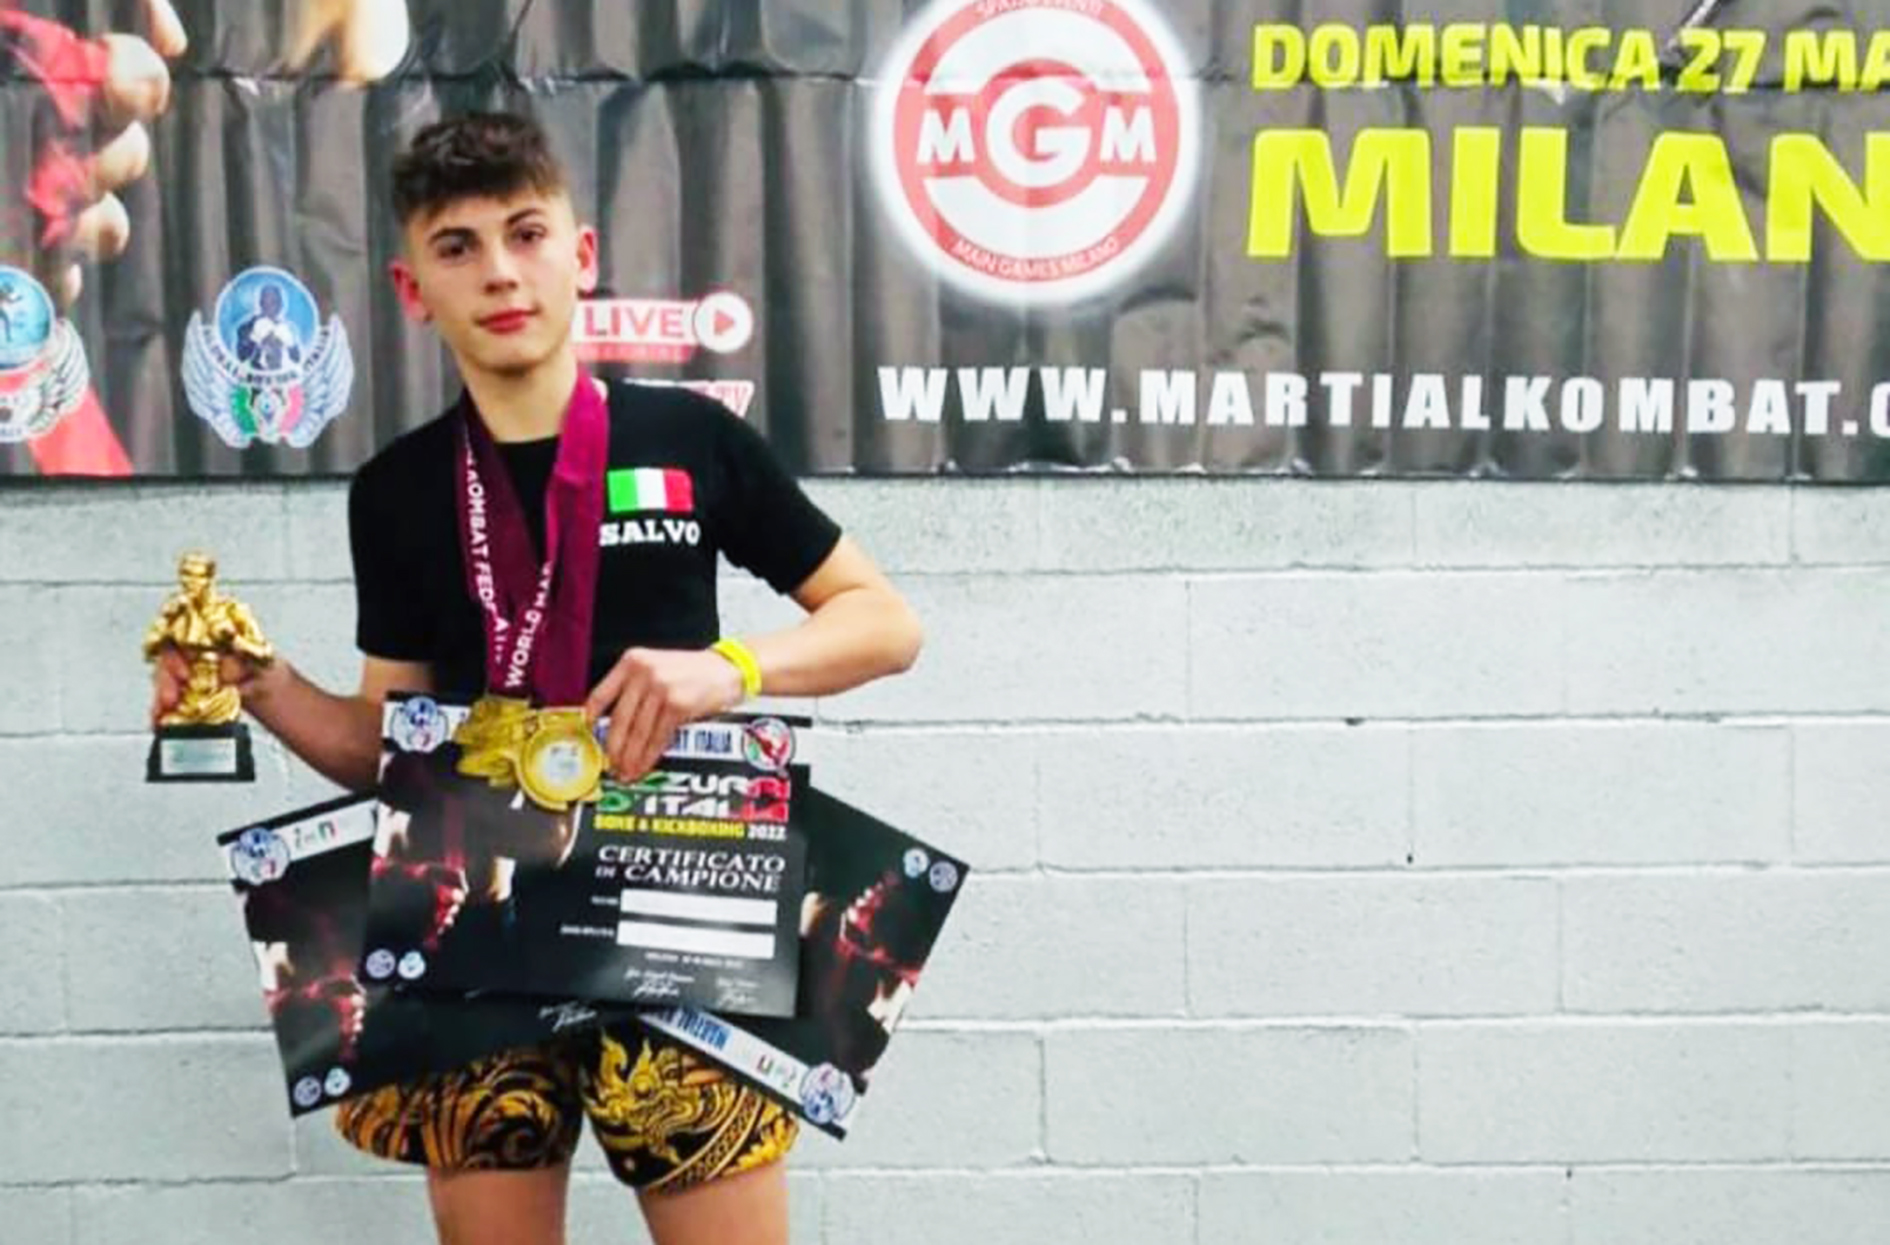 Kick Boxing, il rosolinese Salvatore Piazzese, 15 anni, vince tre titoli ai campionati italiani e vola ai mondiali